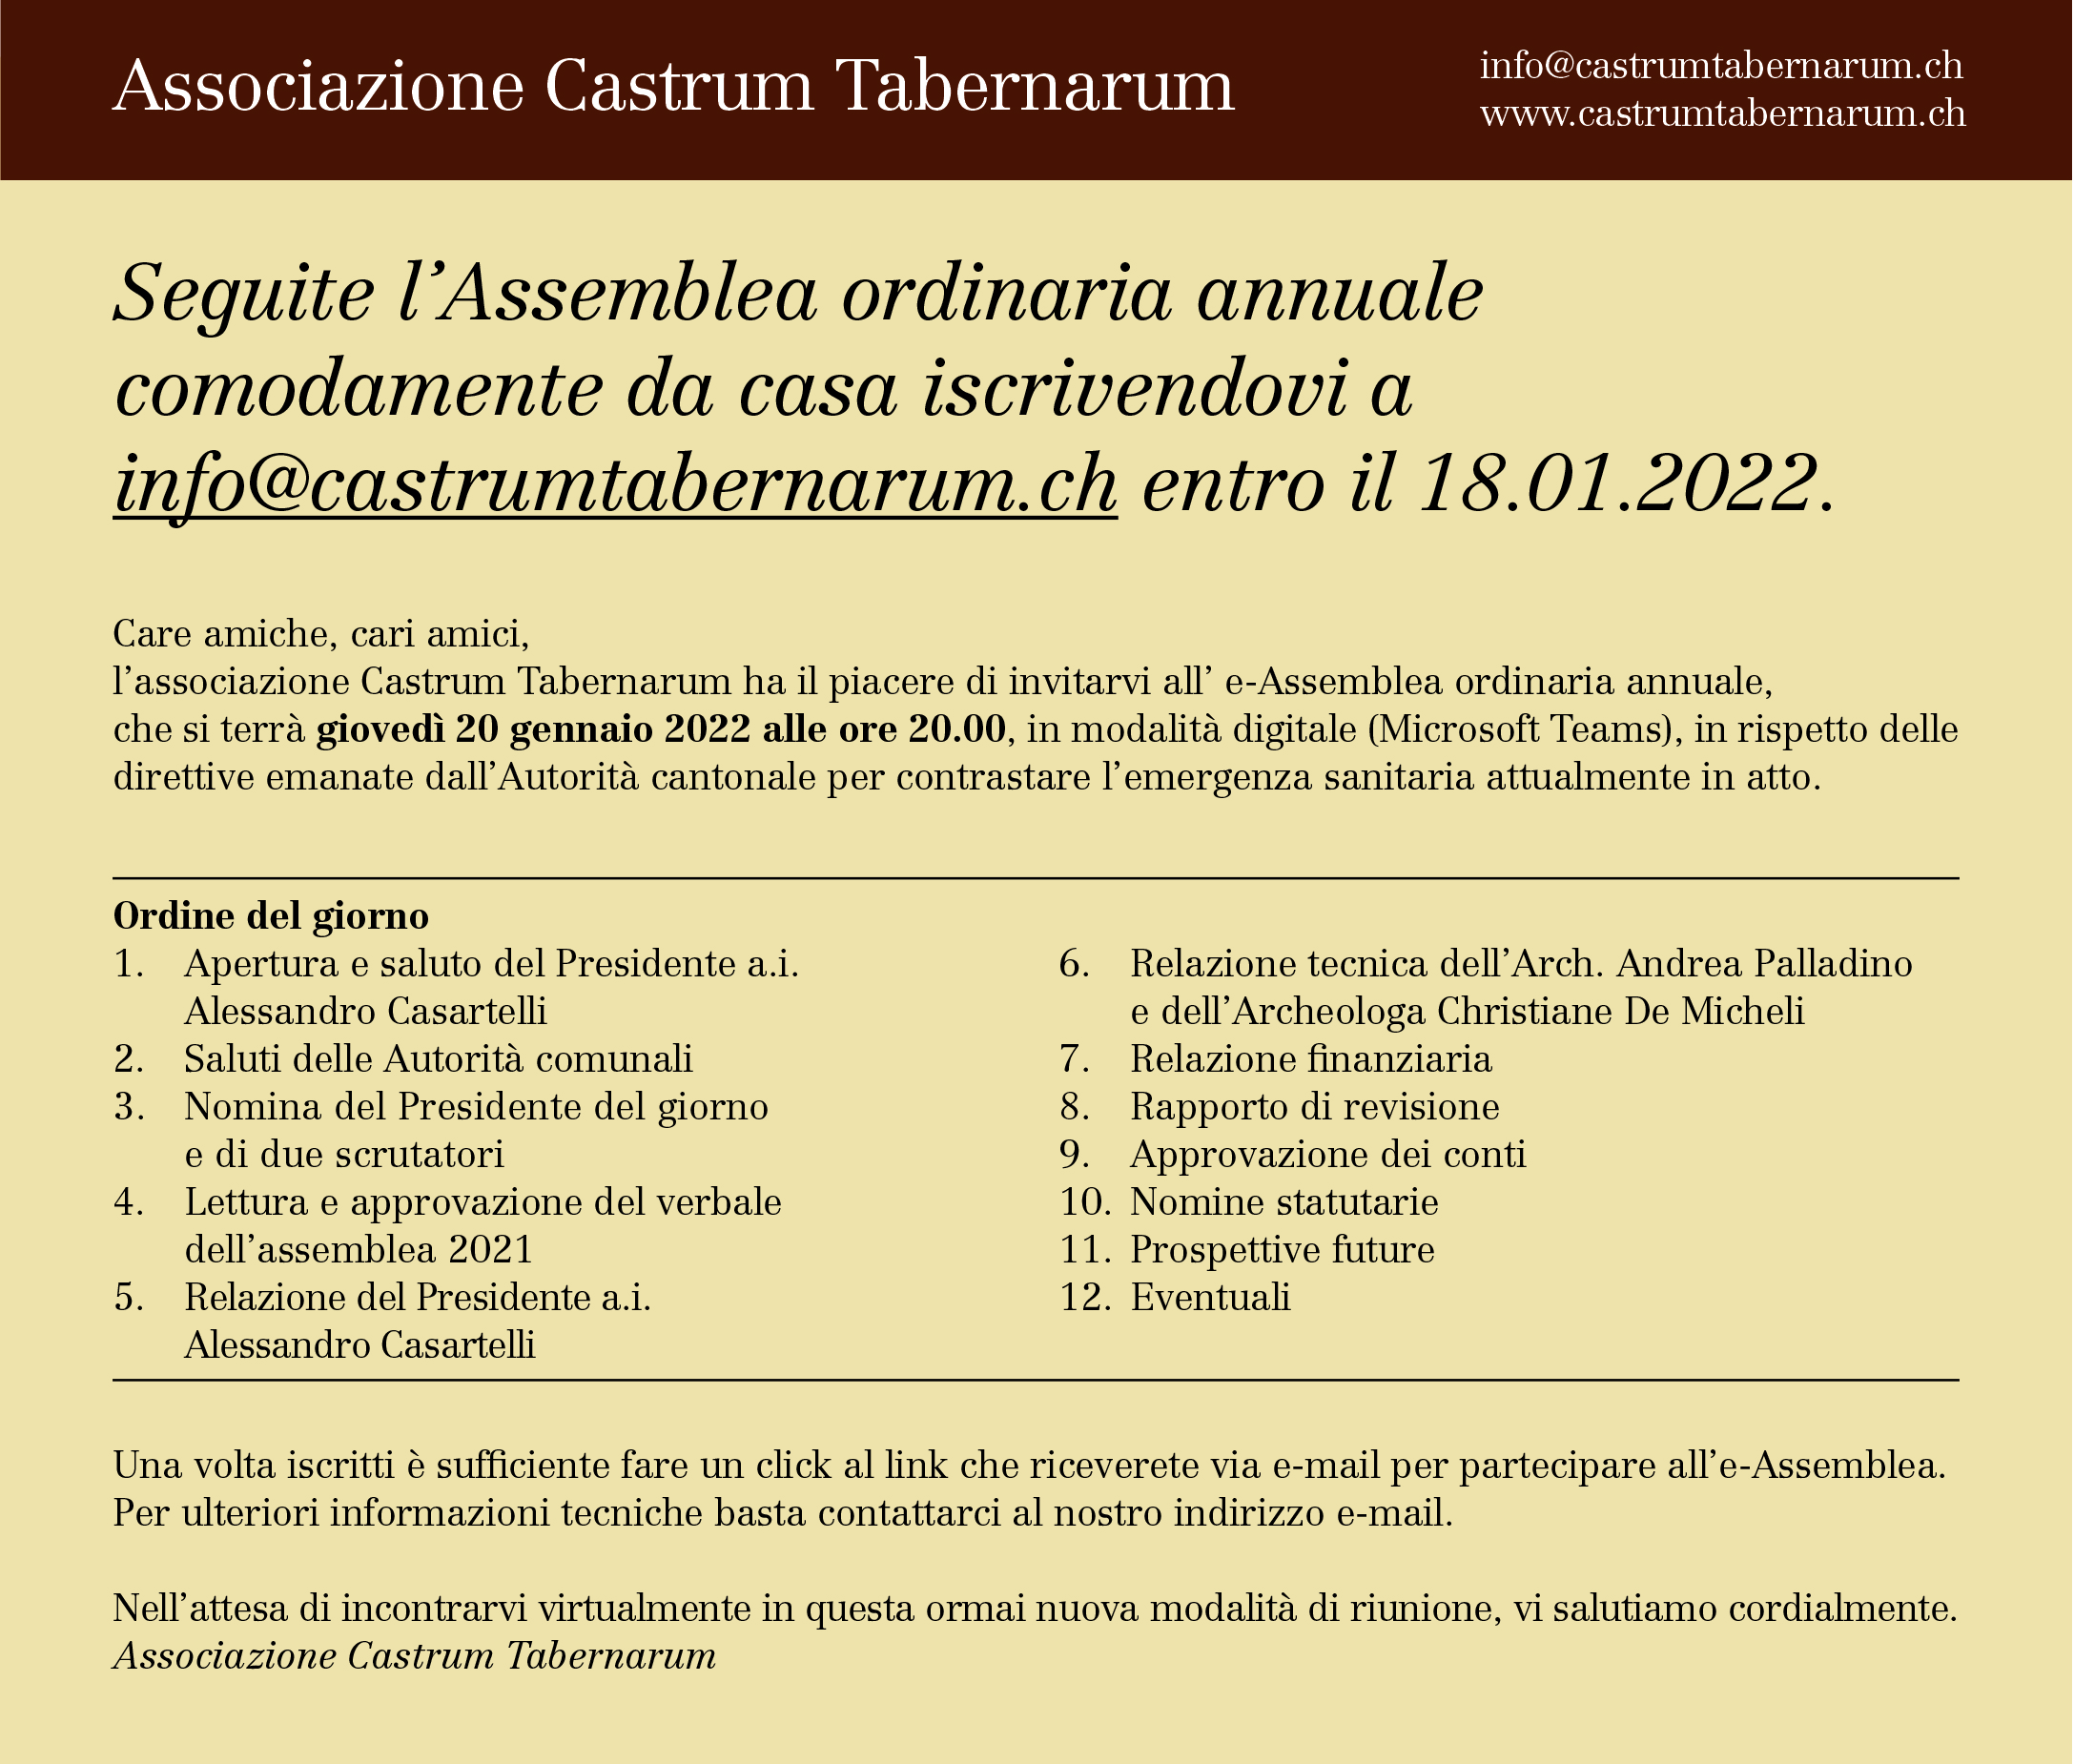 Assemblea annuale Associazione Castrum Tabernarum – 20.01.2022 alle ore 20.00